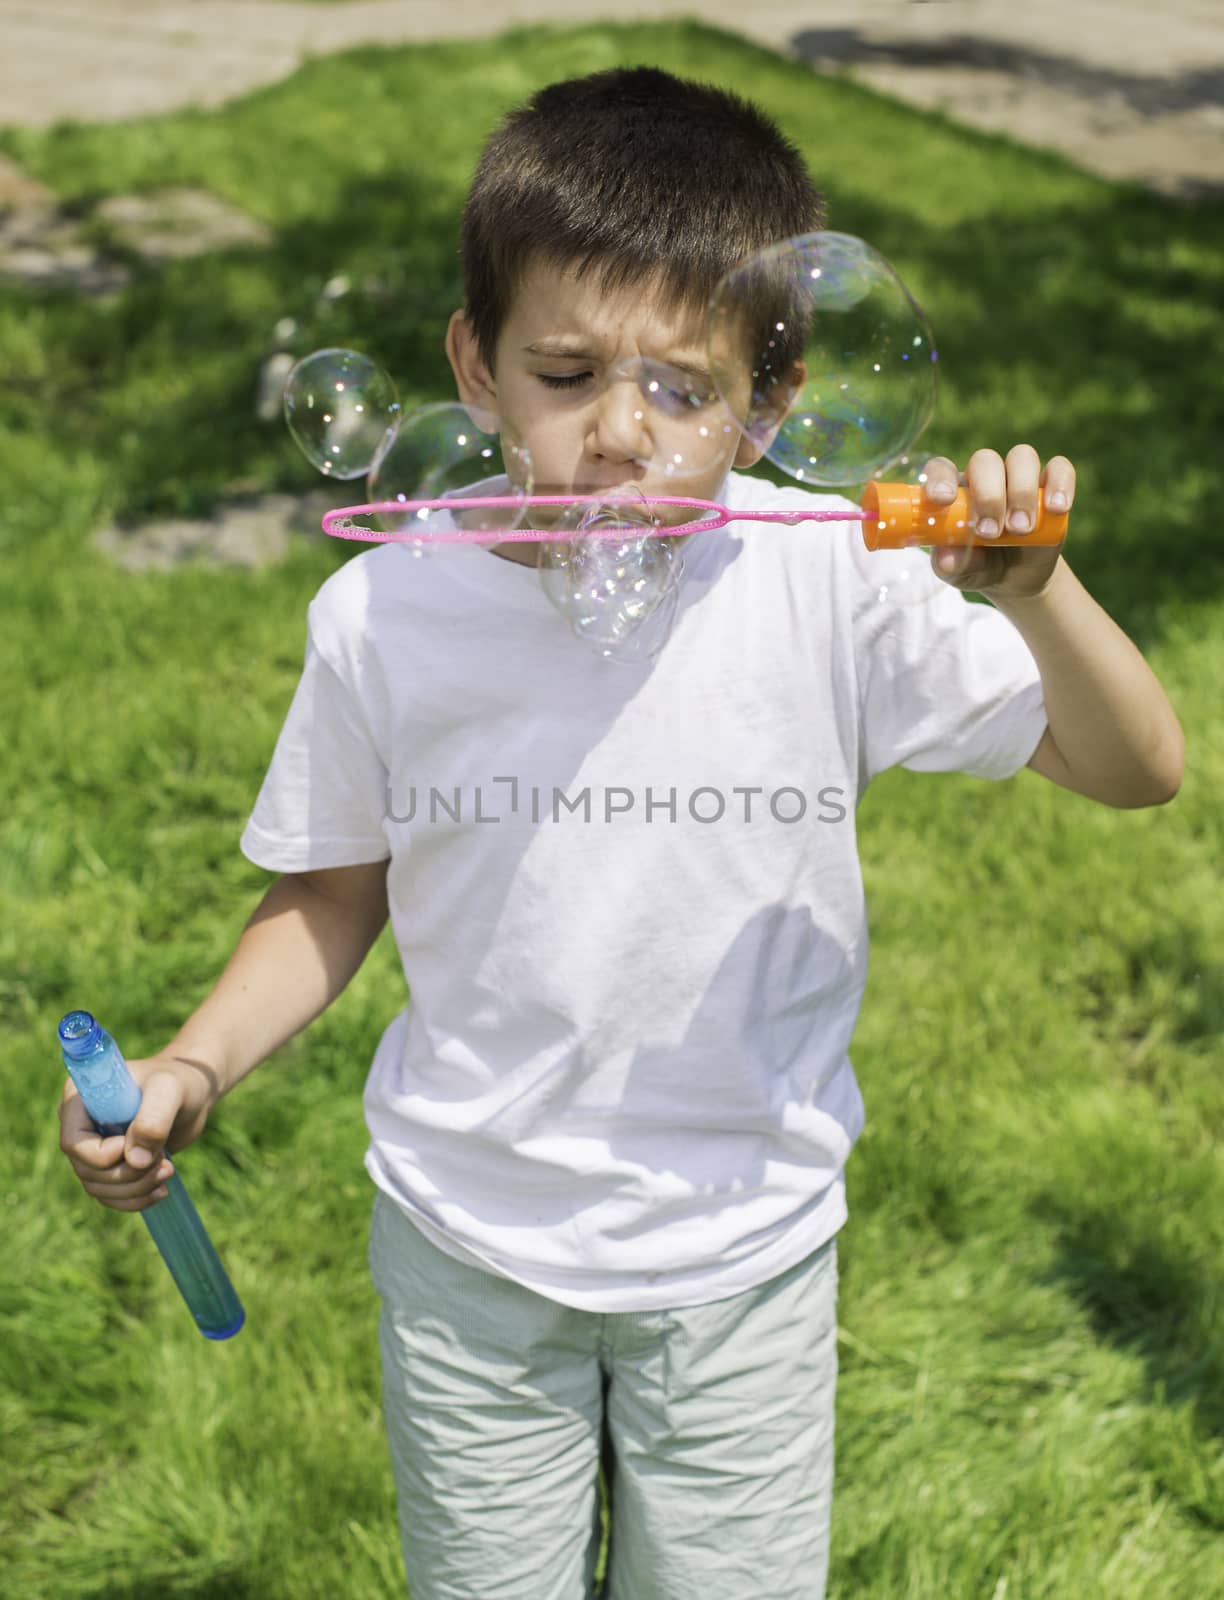 Child makes bubbles. Green park